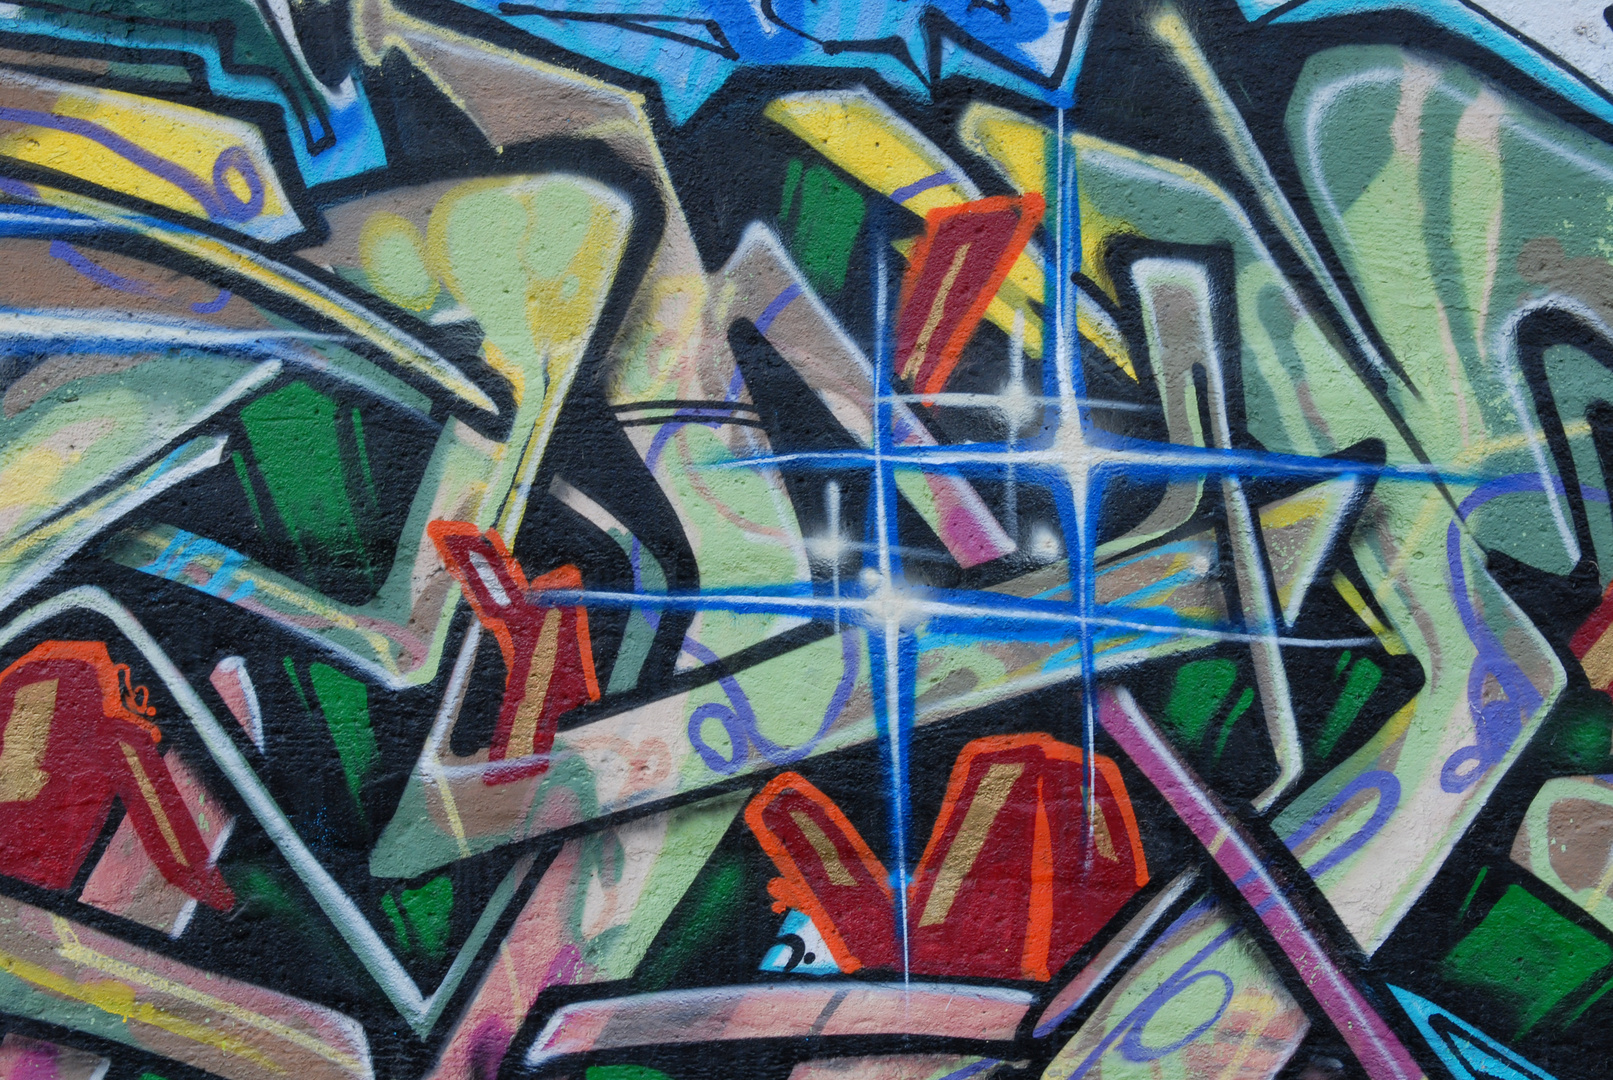 Graffiti (2)